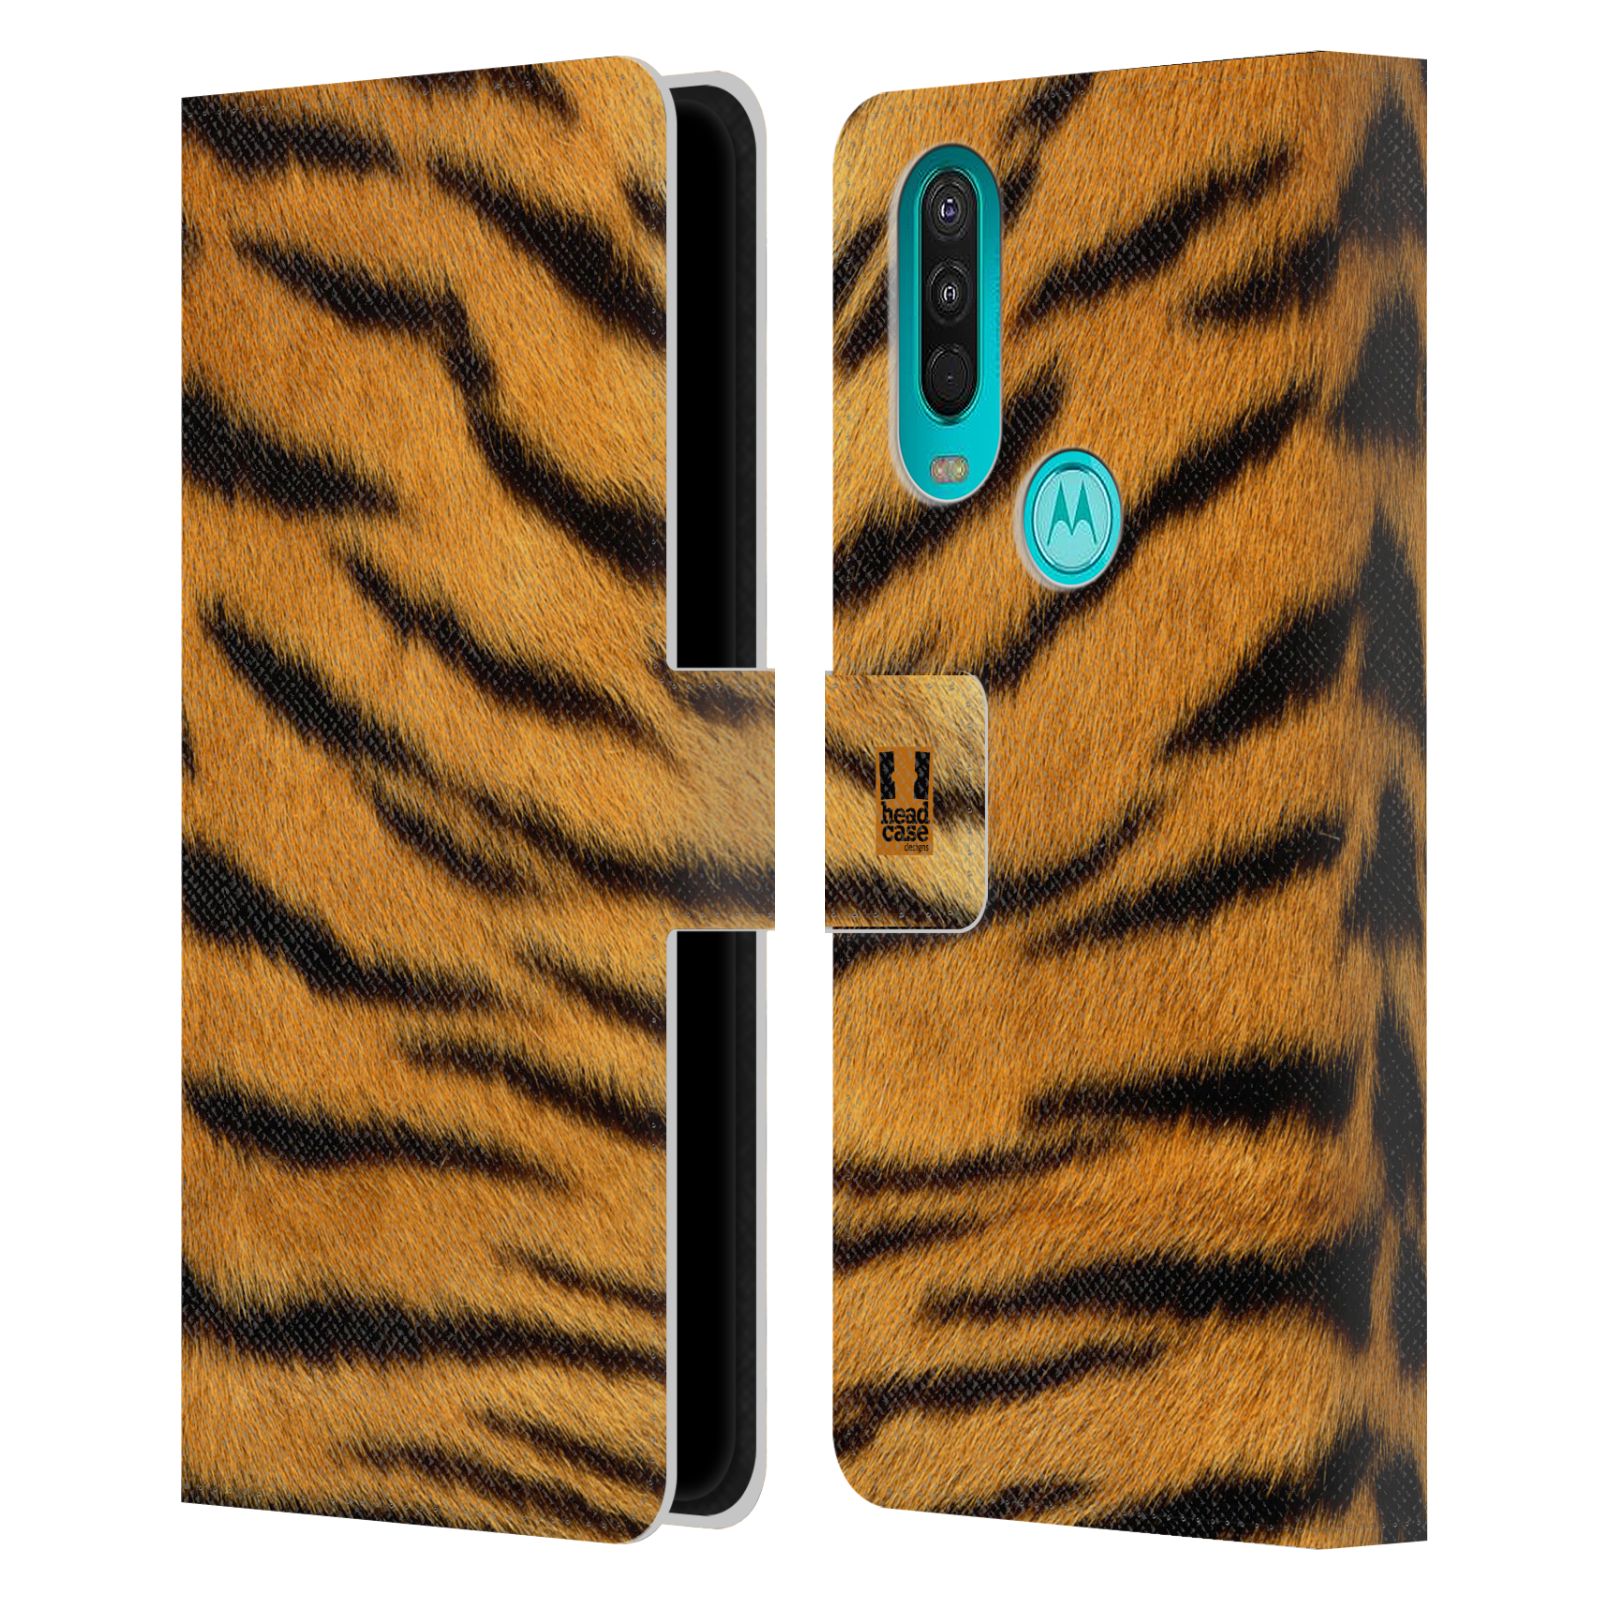 Pouzdro HEAD CASE na mobil Nokia 2.4 zvíře srst divoká kolekce tygr